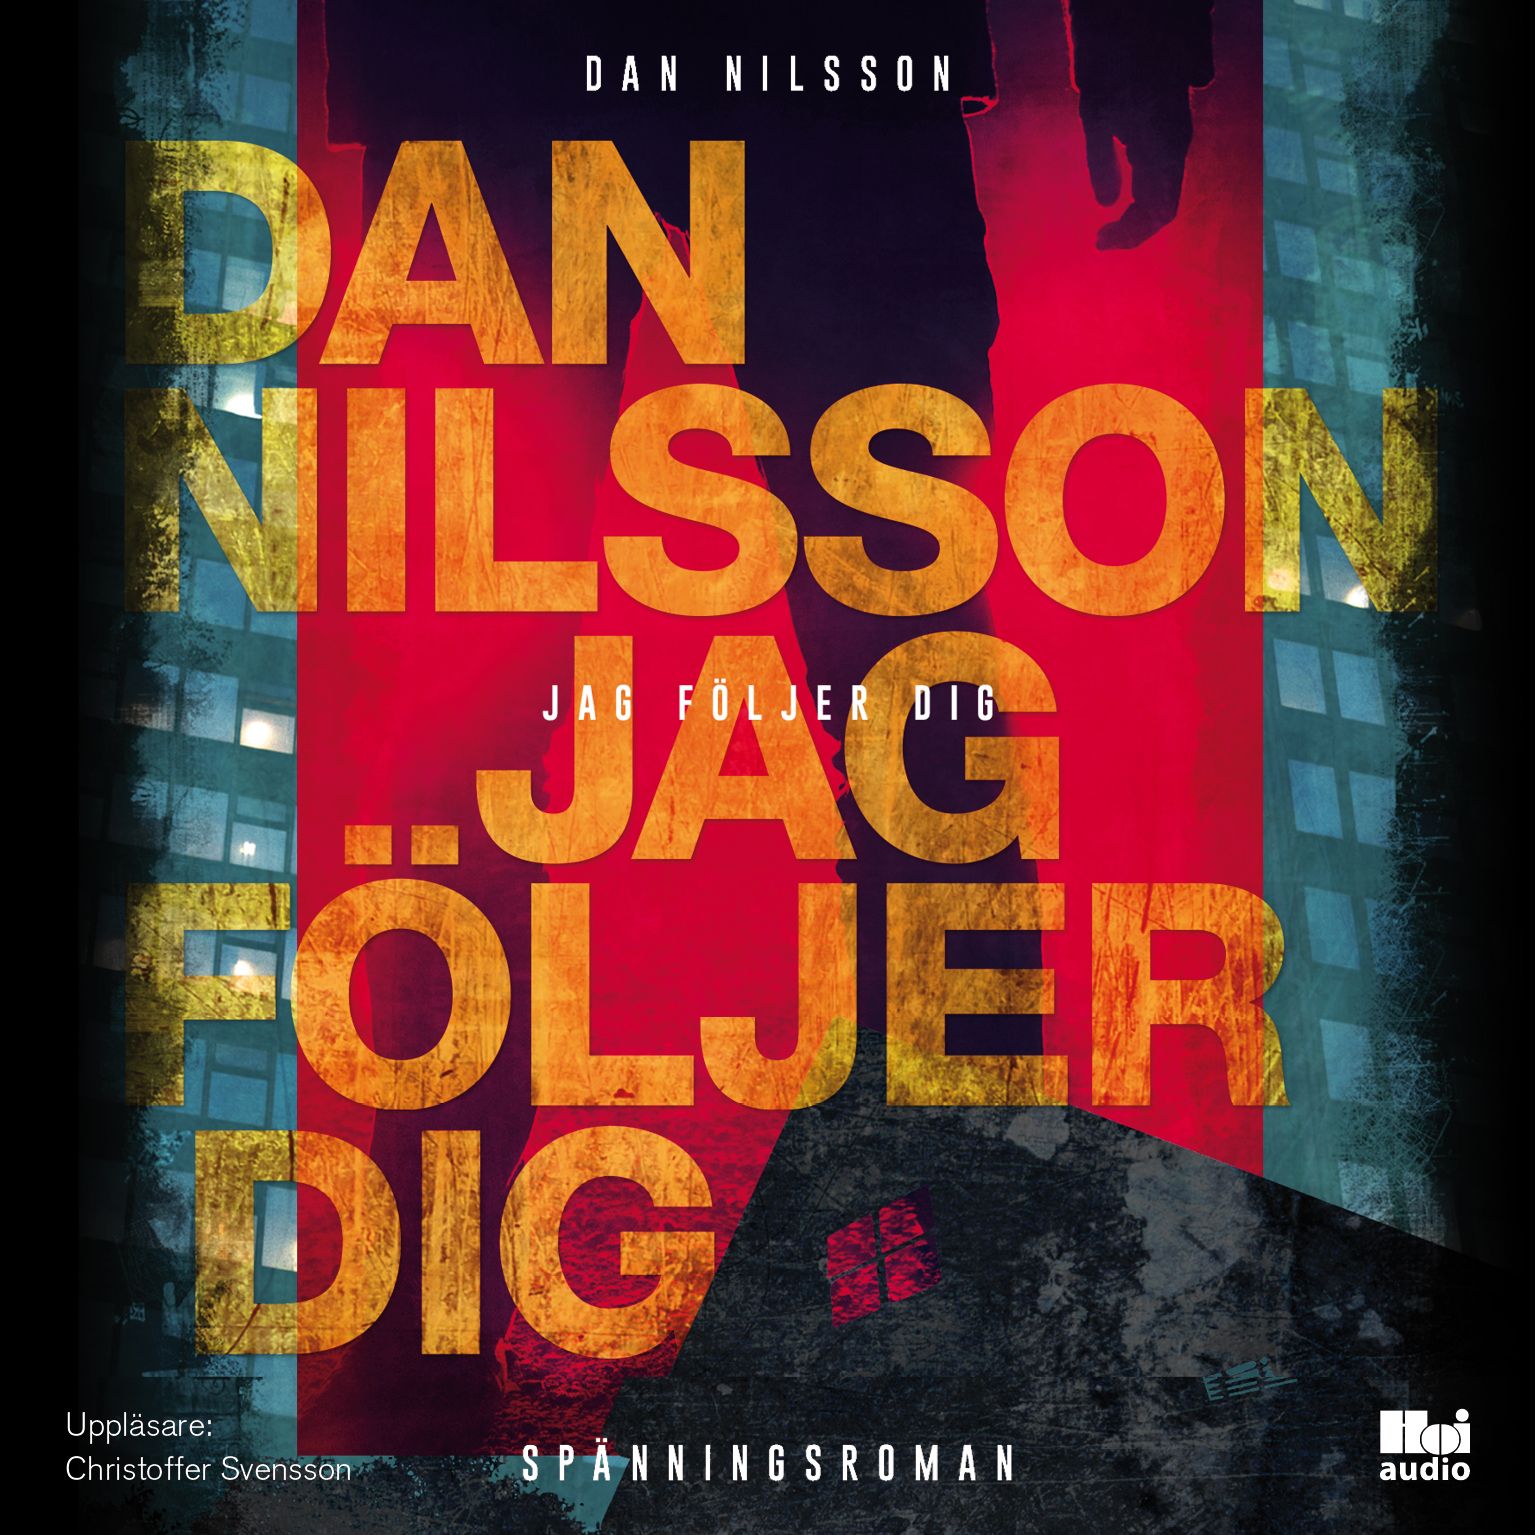 Jag följer dig, ljudbok av Dan Nilsson